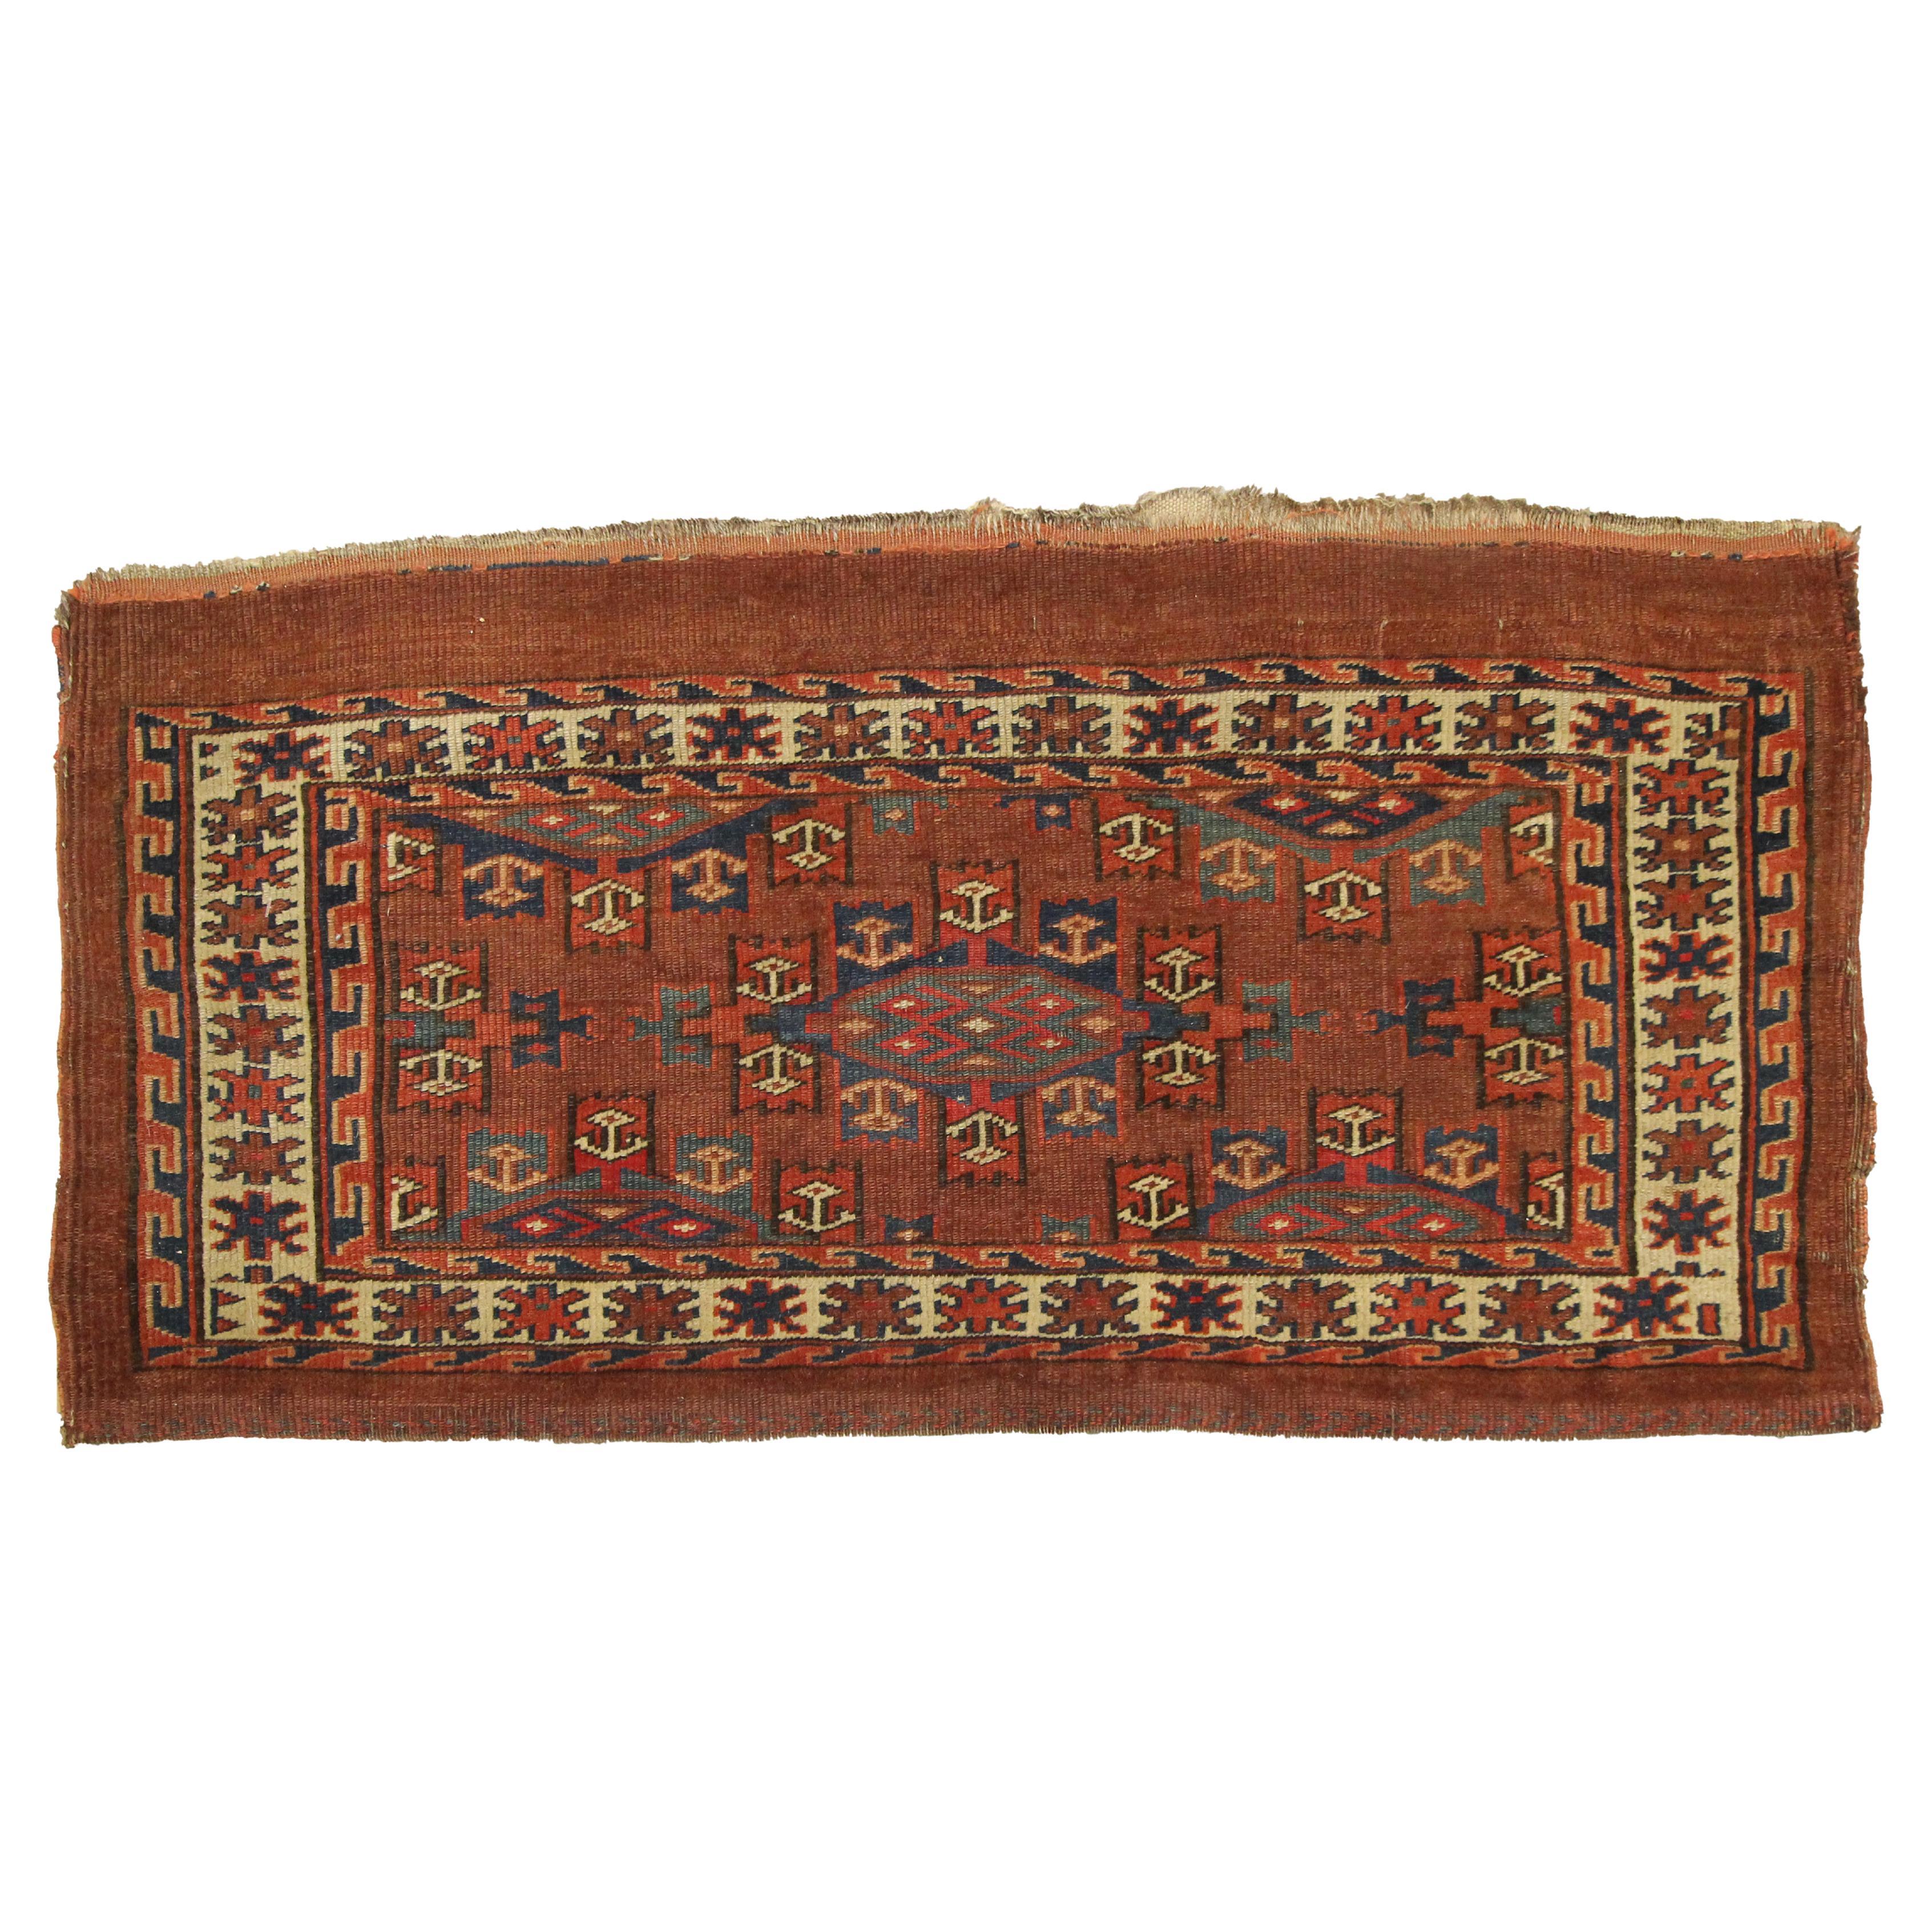 Tapis turkmène ancien Chuval tissé à la main Tapis traditionnel en laine rouille